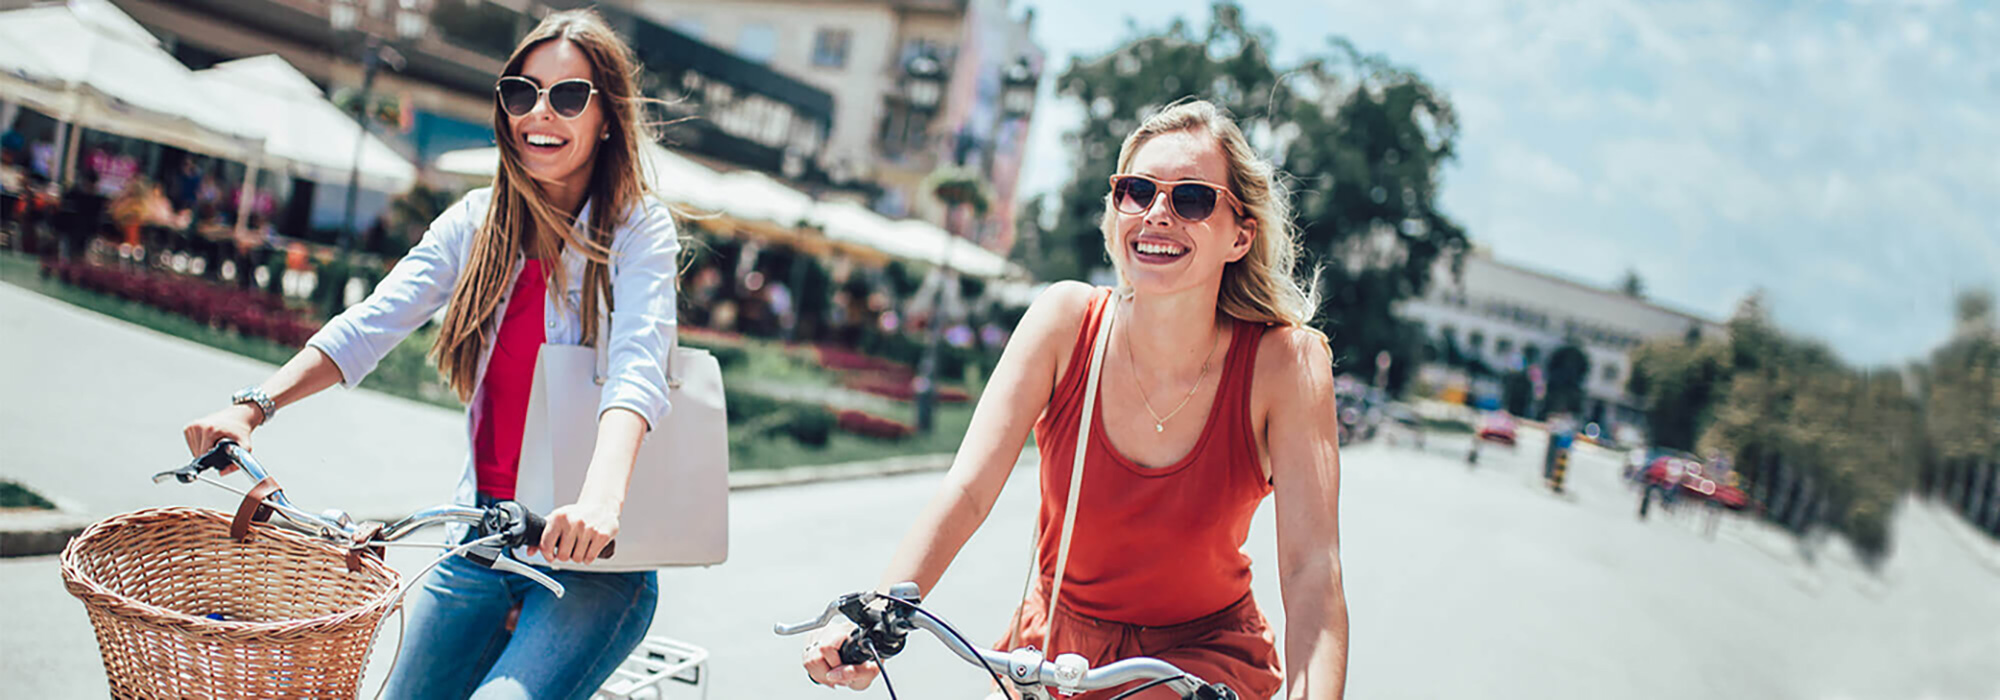 Zwei Damen, jeweils auf einem Fahrrad sind auf der Straße zum Einkaufen unterwegs.